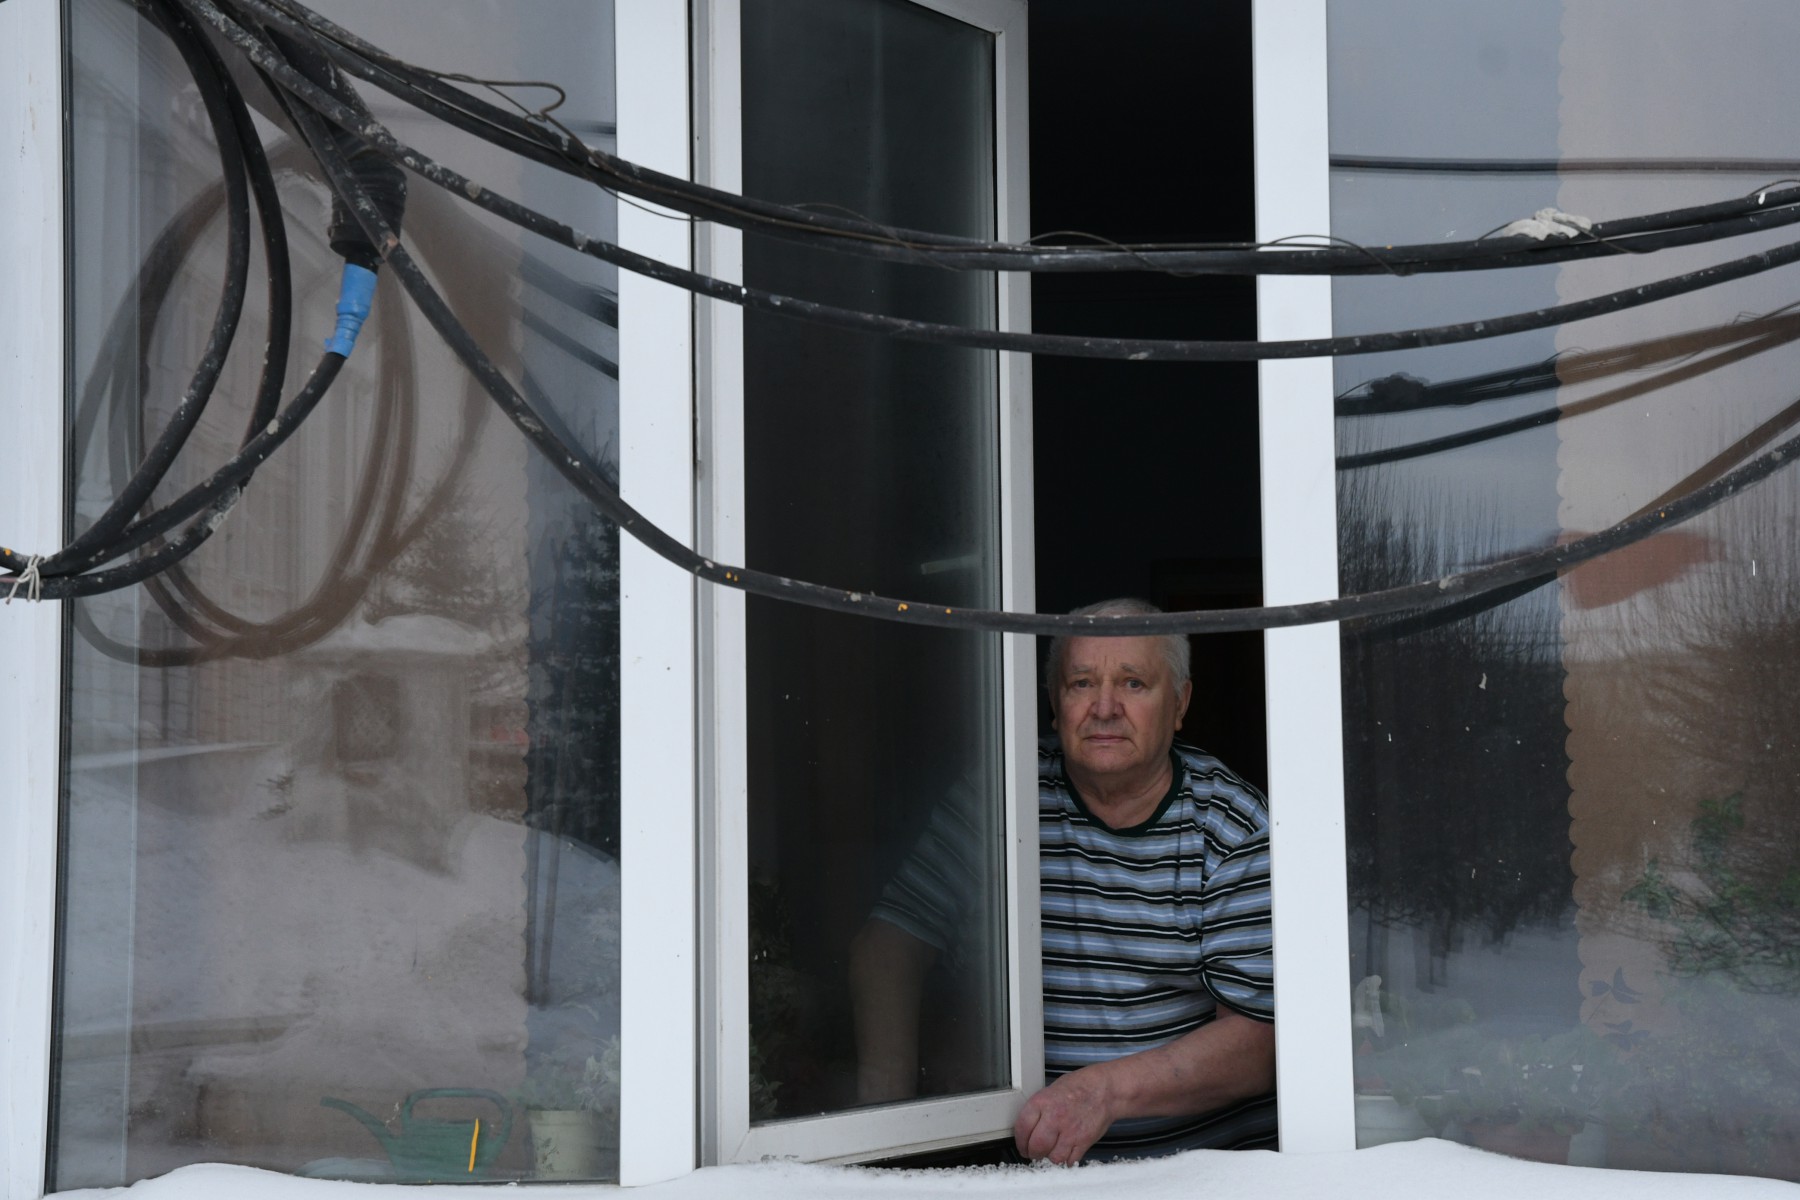 Бориса Ляпустина абсолютно не устраивает то, что сейчас напротив его окна висит вот такая связка кабеля. Фото Владимира Коцюбы-Белых